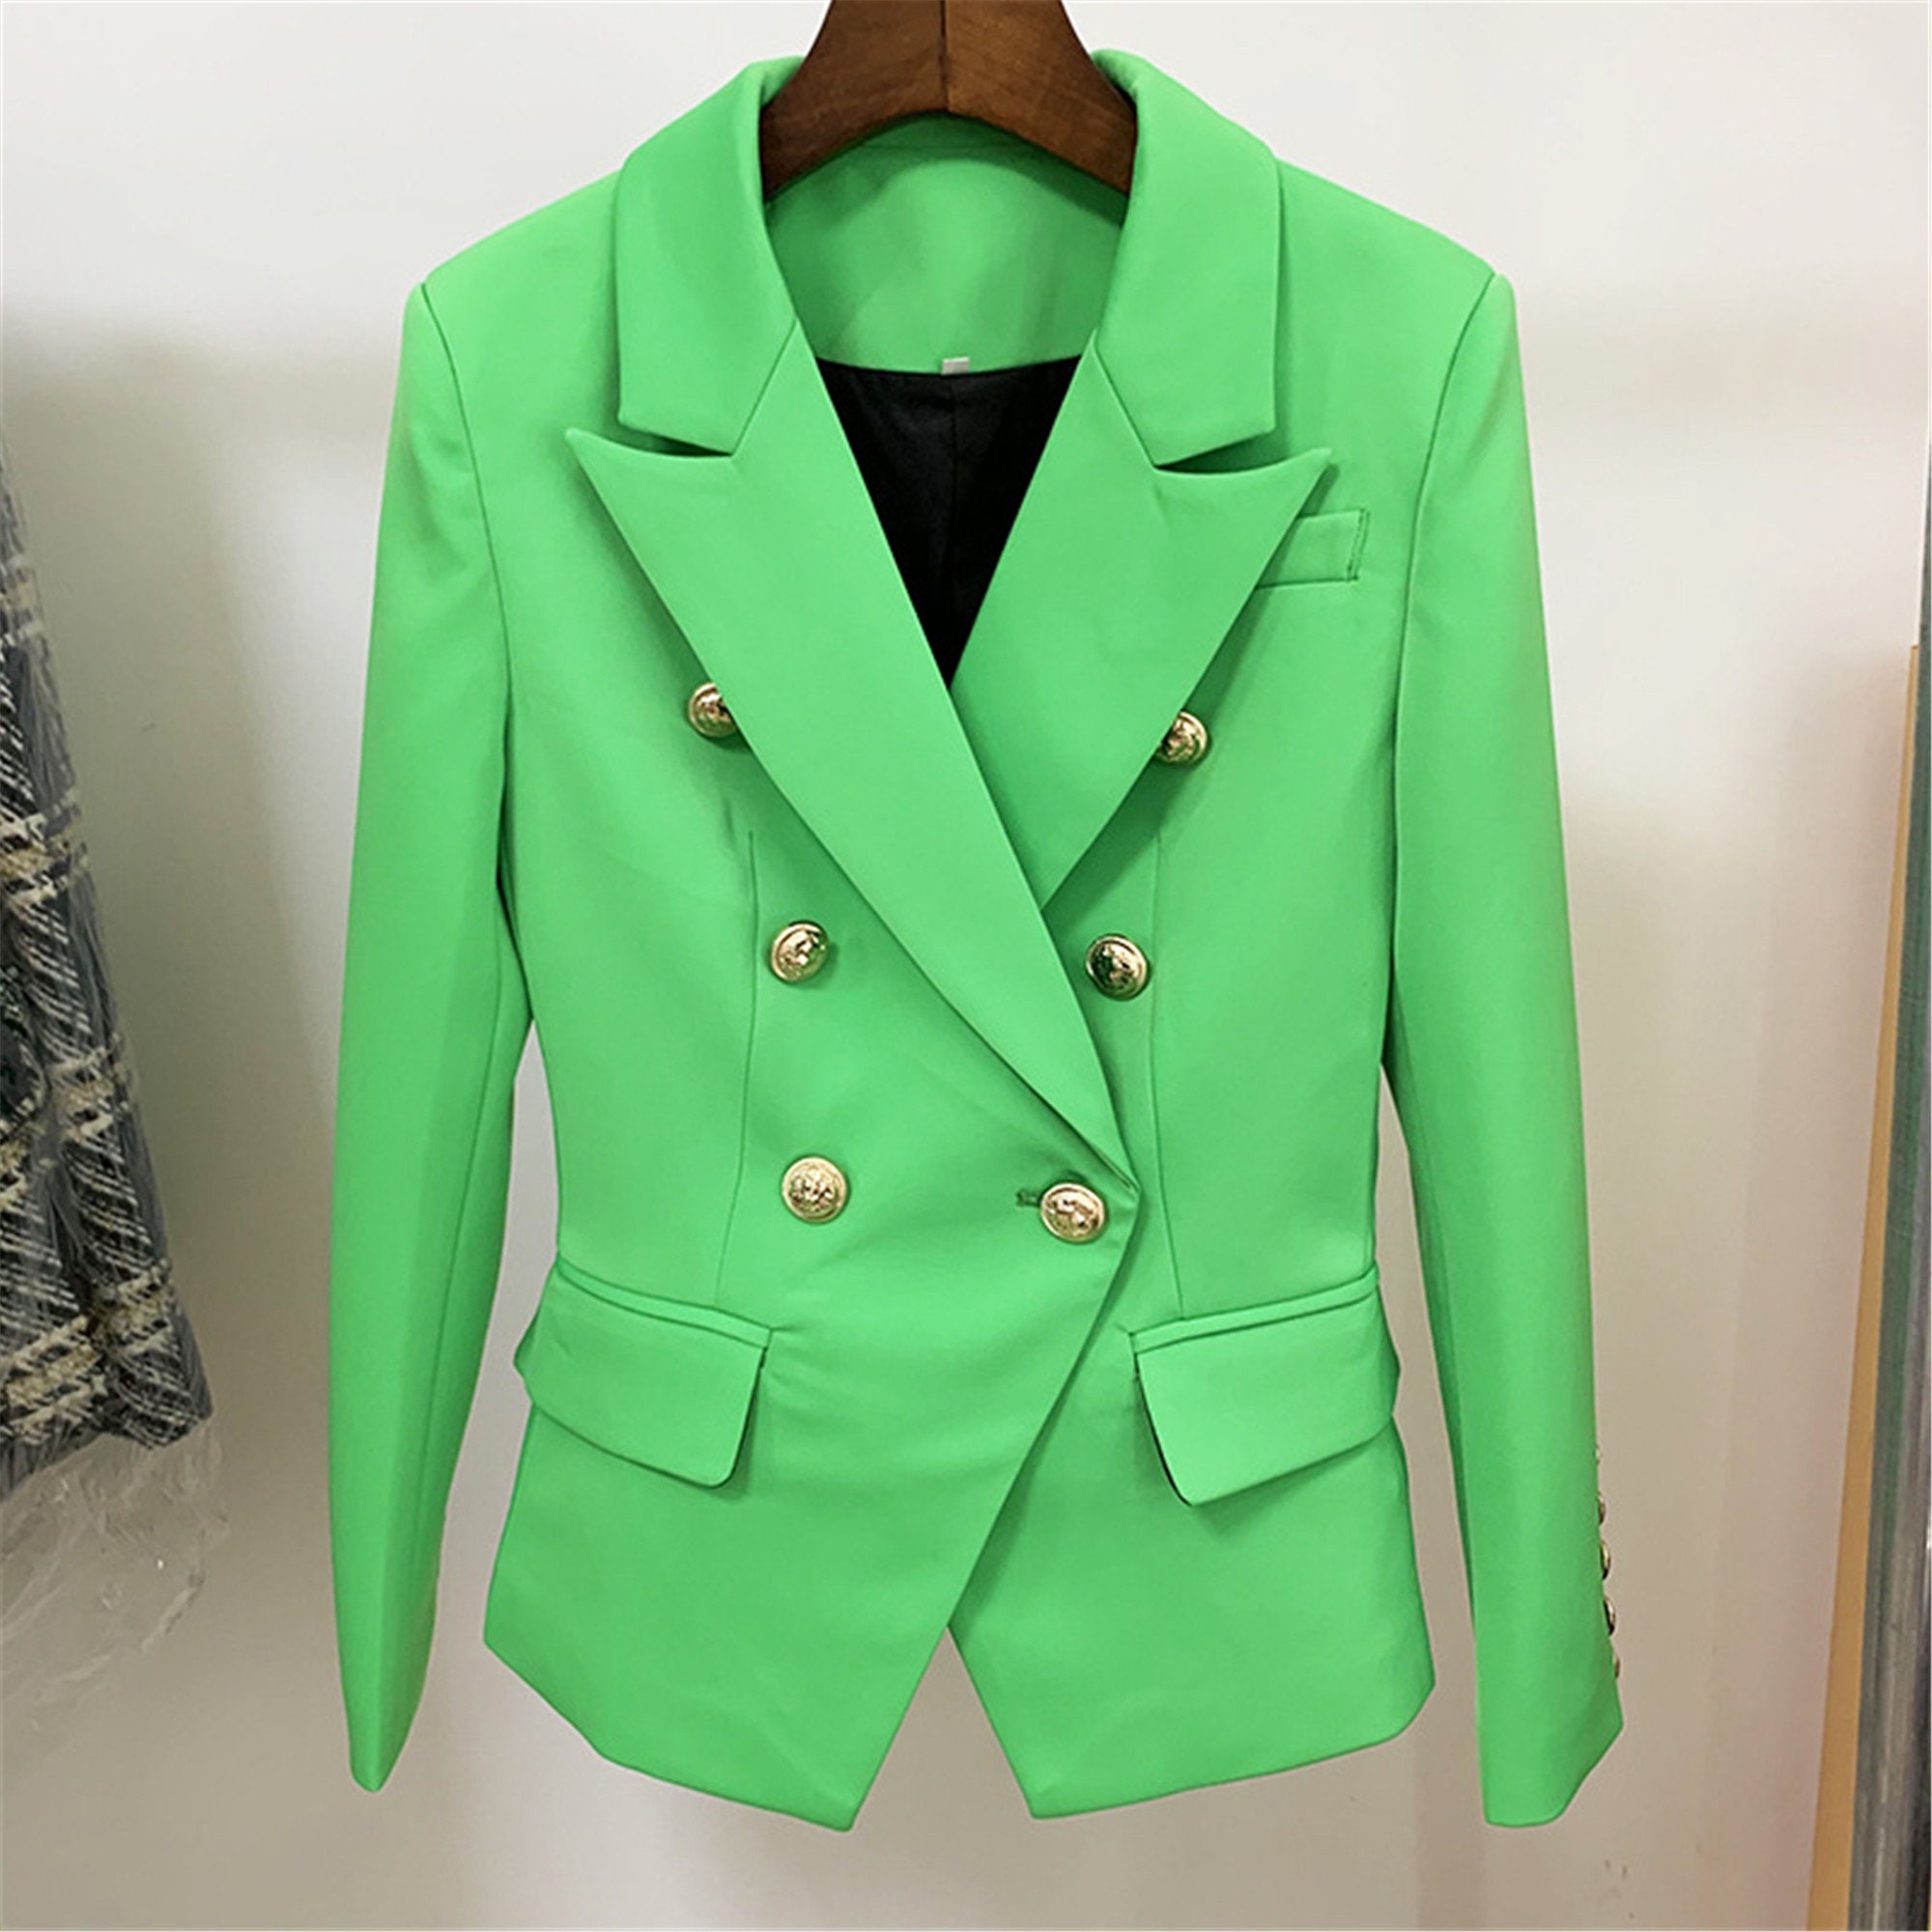 Women's Green Fitted Blazer Golden Buttons Coat